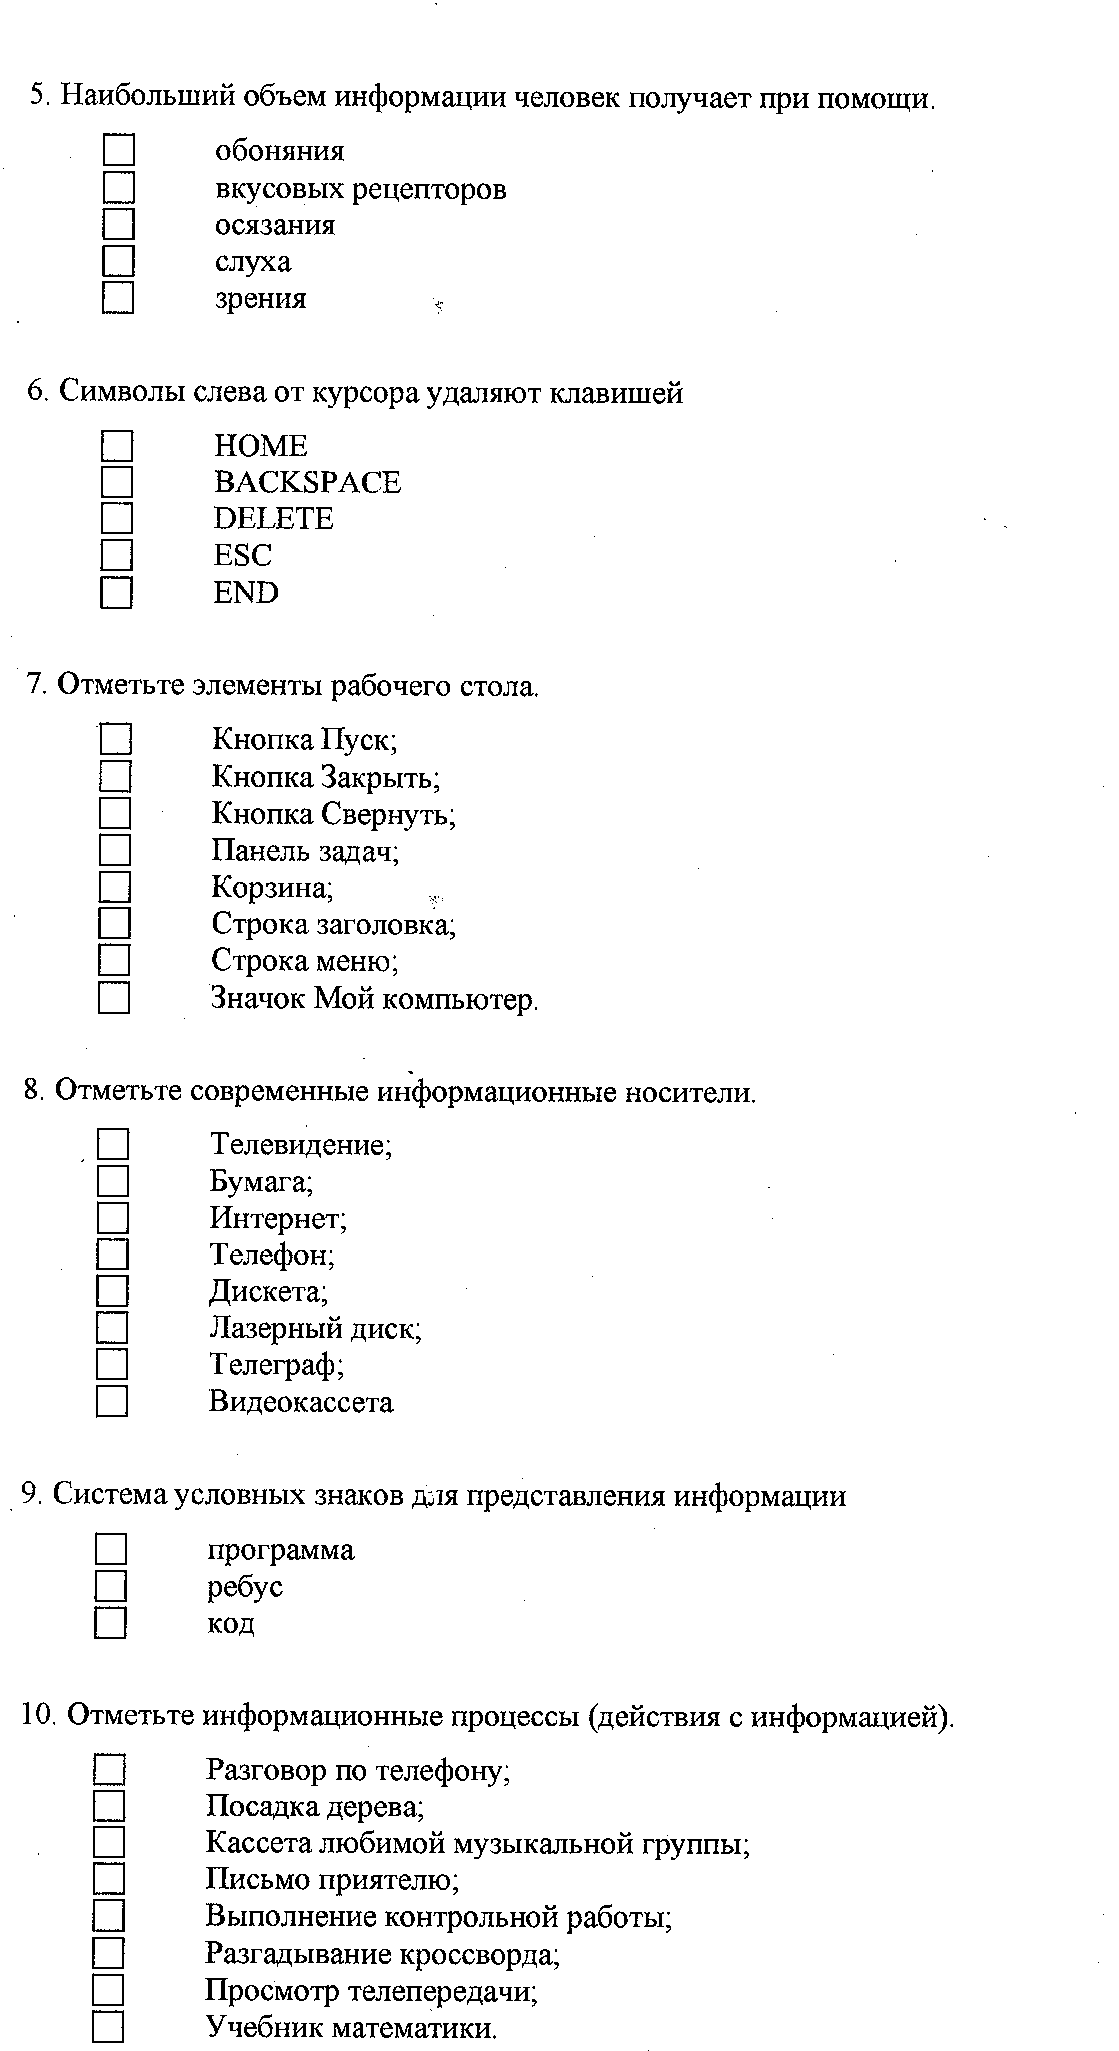 Рабочая программа по информатике ФГОС. 5 класс